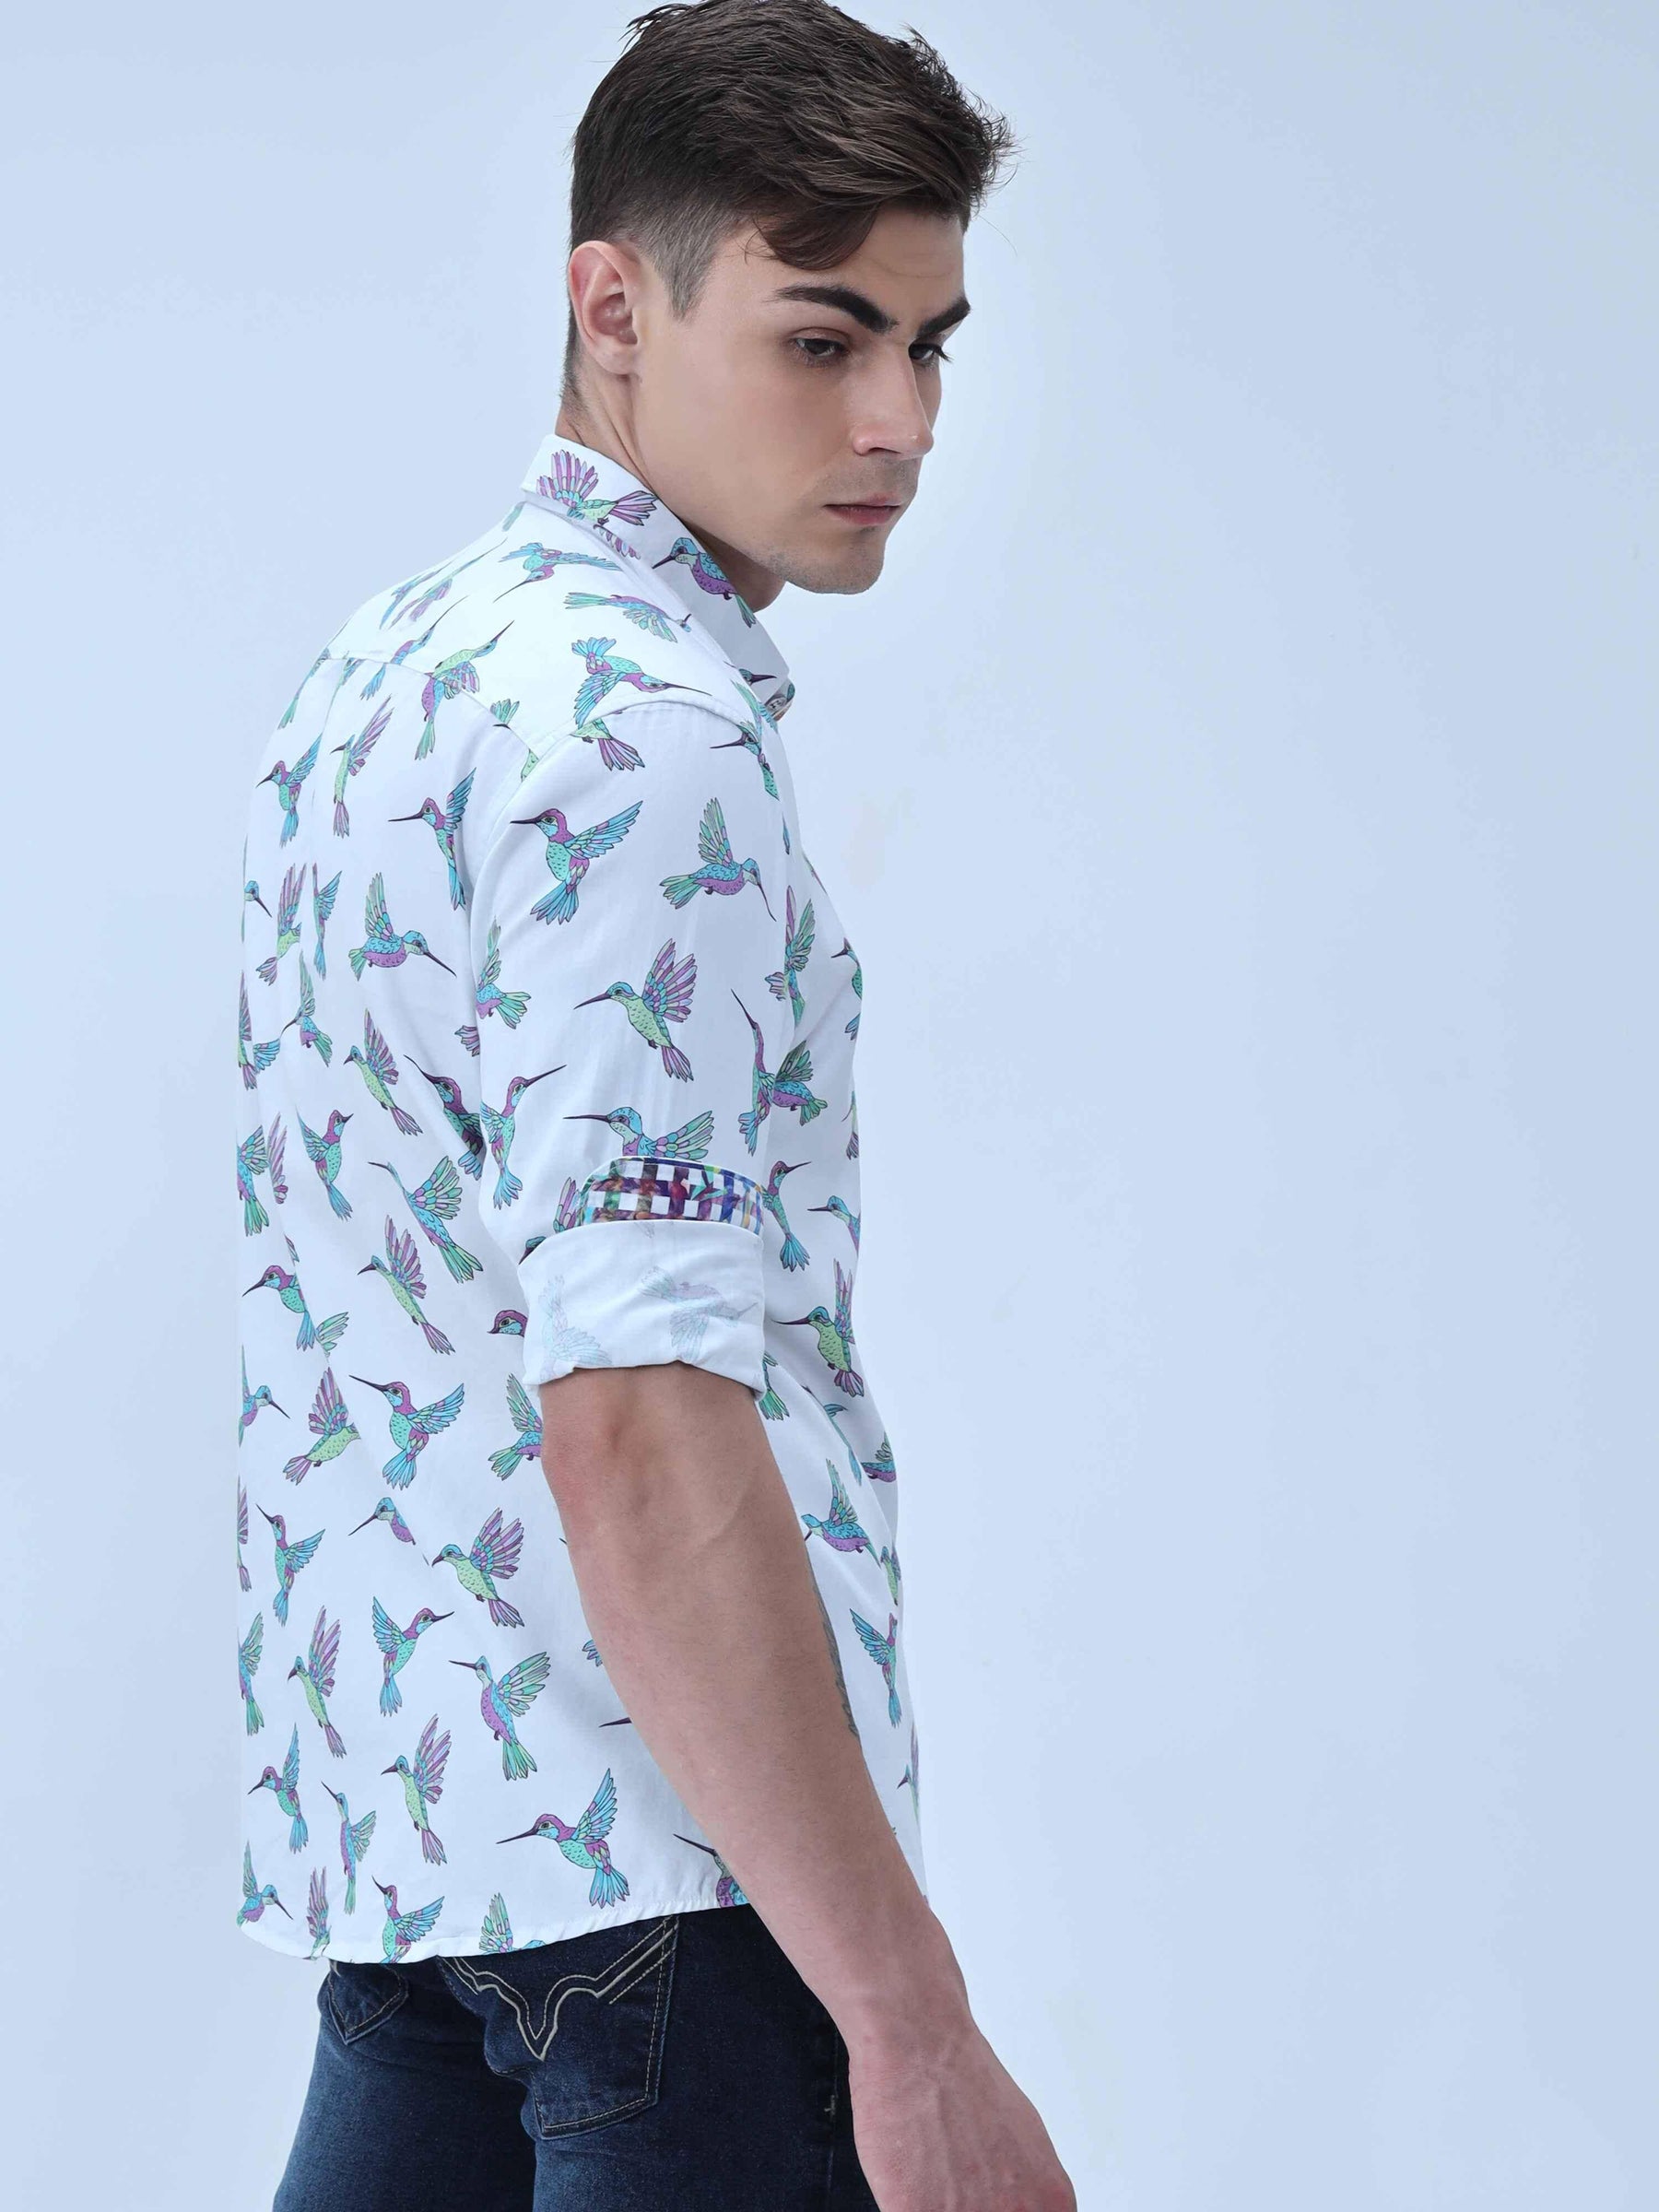 Flying Bird Digital Printed Full Shirt - Guniaa Fashions